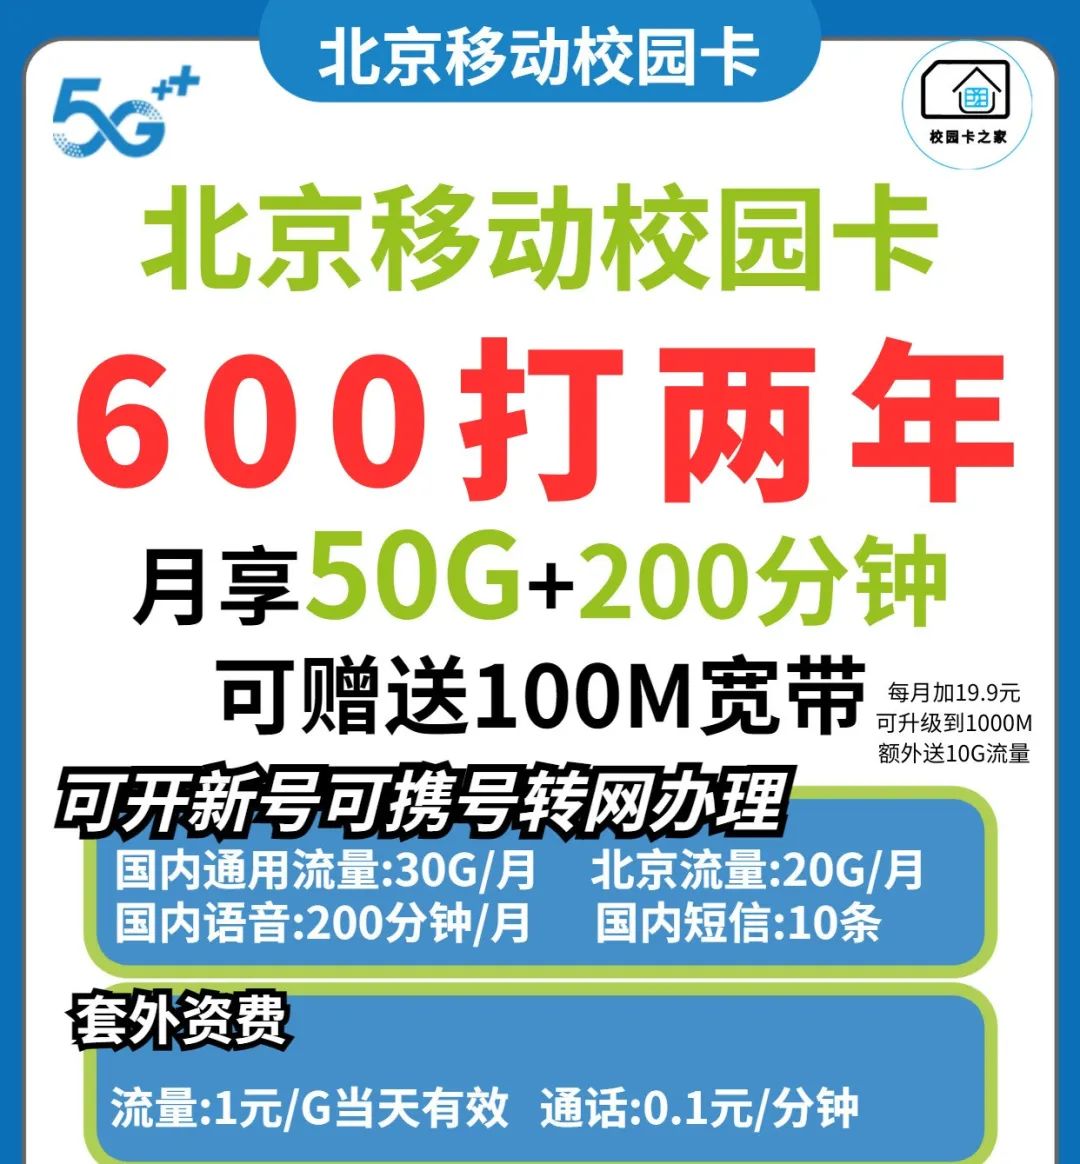 月均24元每月50G流量+200分钟+100M宽带，北京移动校园卡使用测评插图1